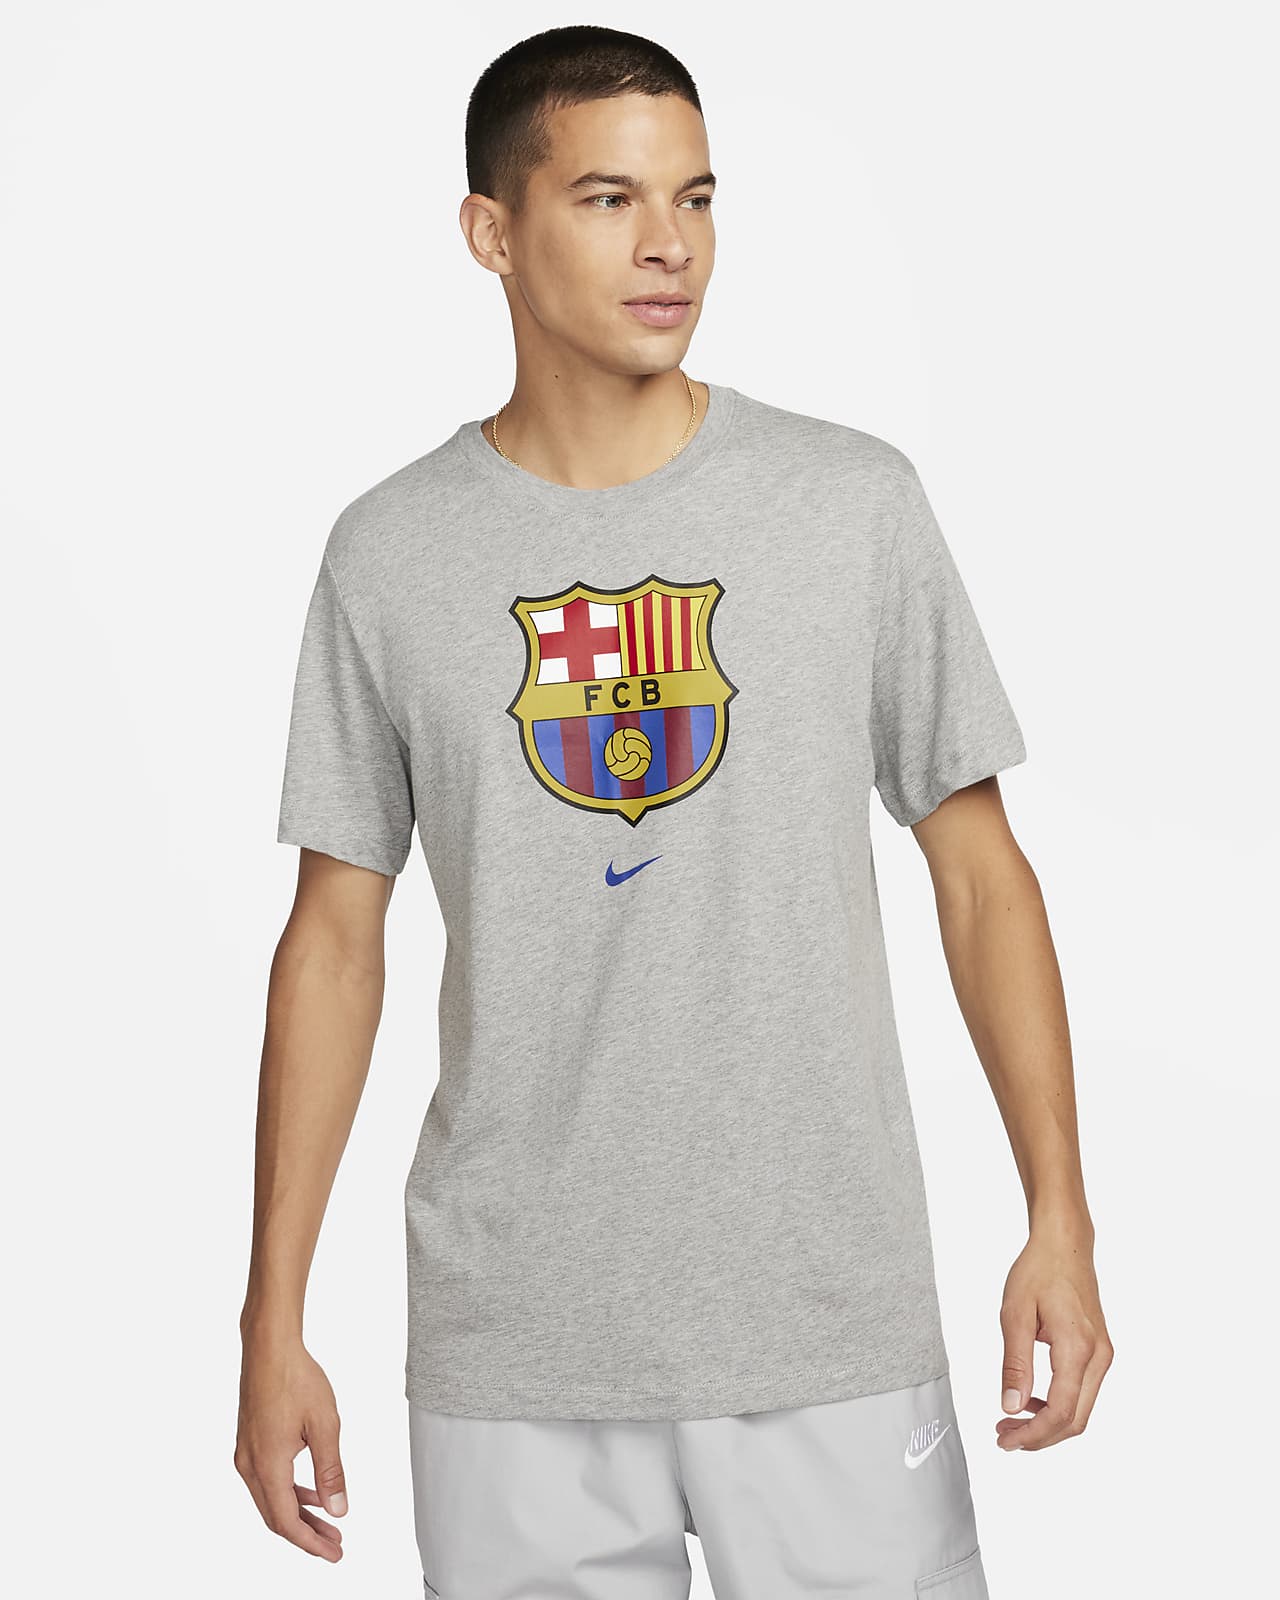 t shirt of barcelona fc